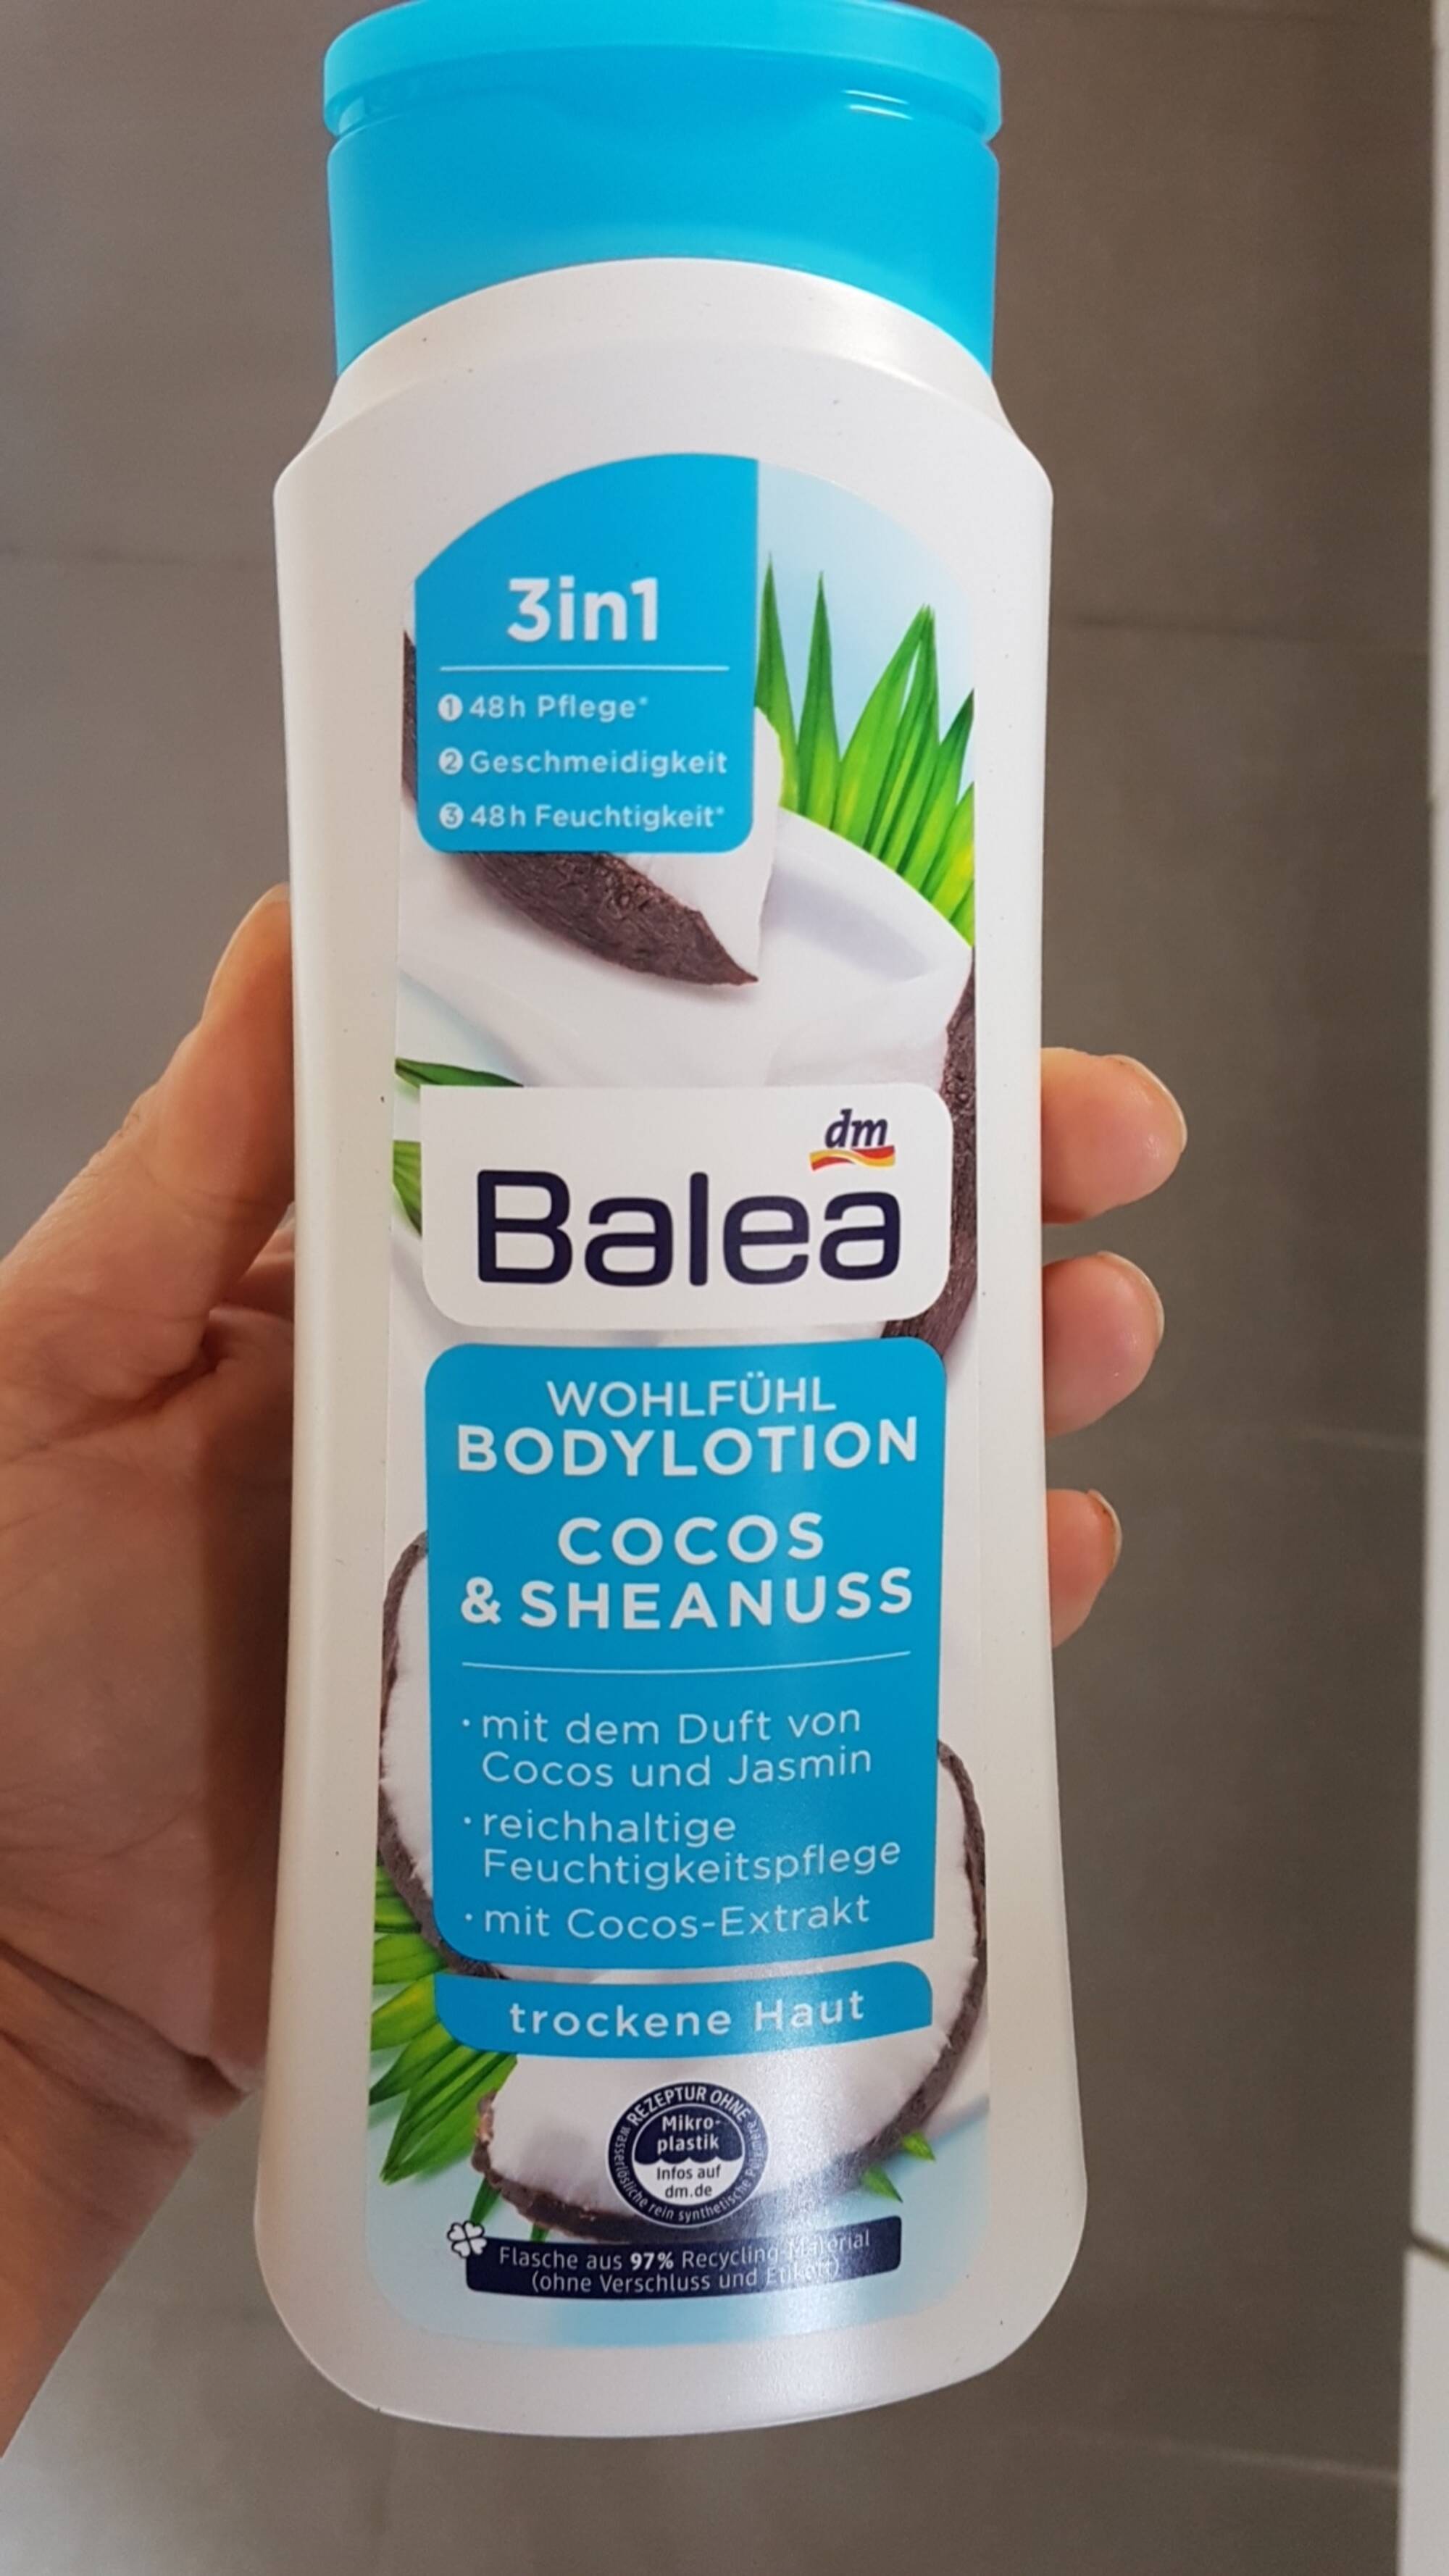 BALEA - Cocos & sheanuss - Body lotion 3 in 1